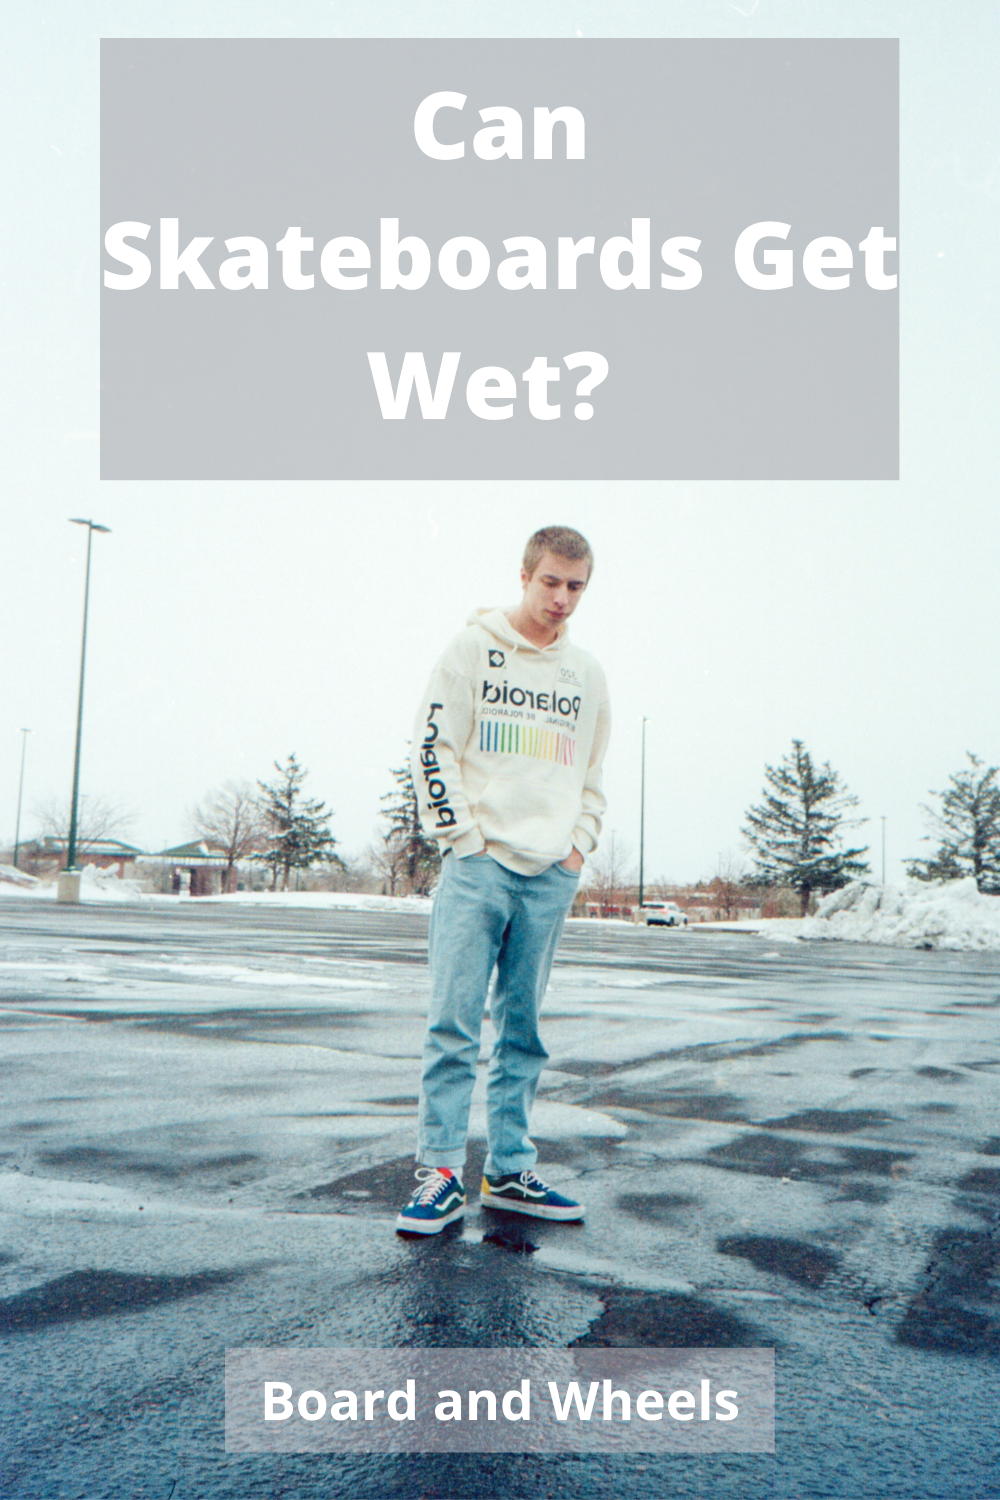 I could skate